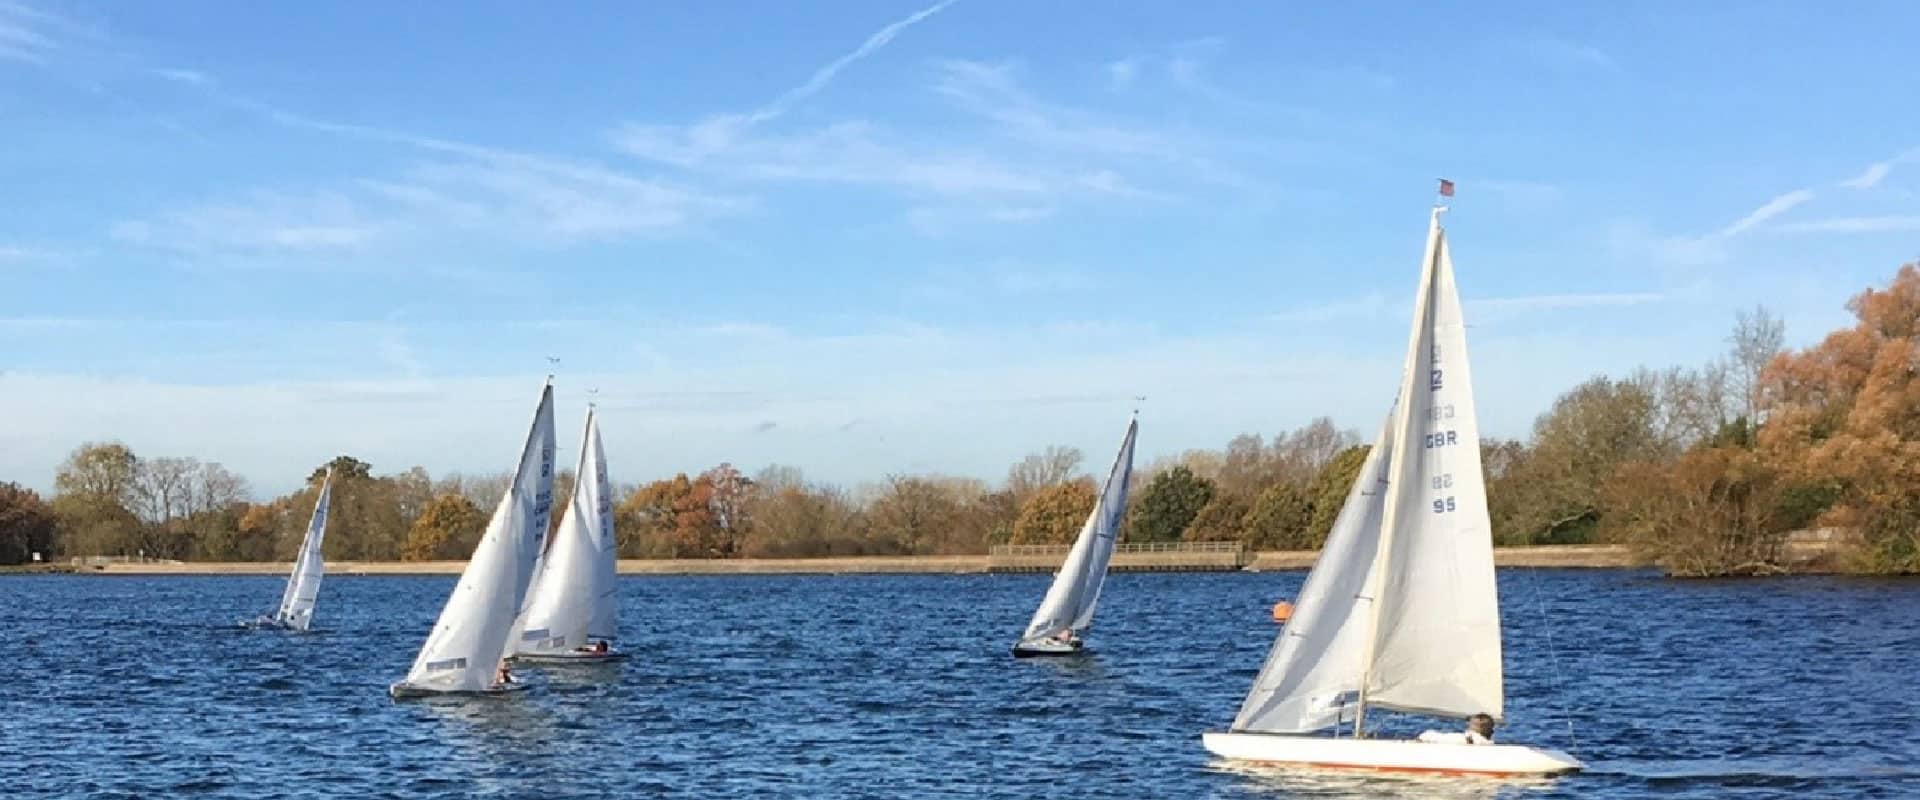 Aldenham Sailing Club in UK